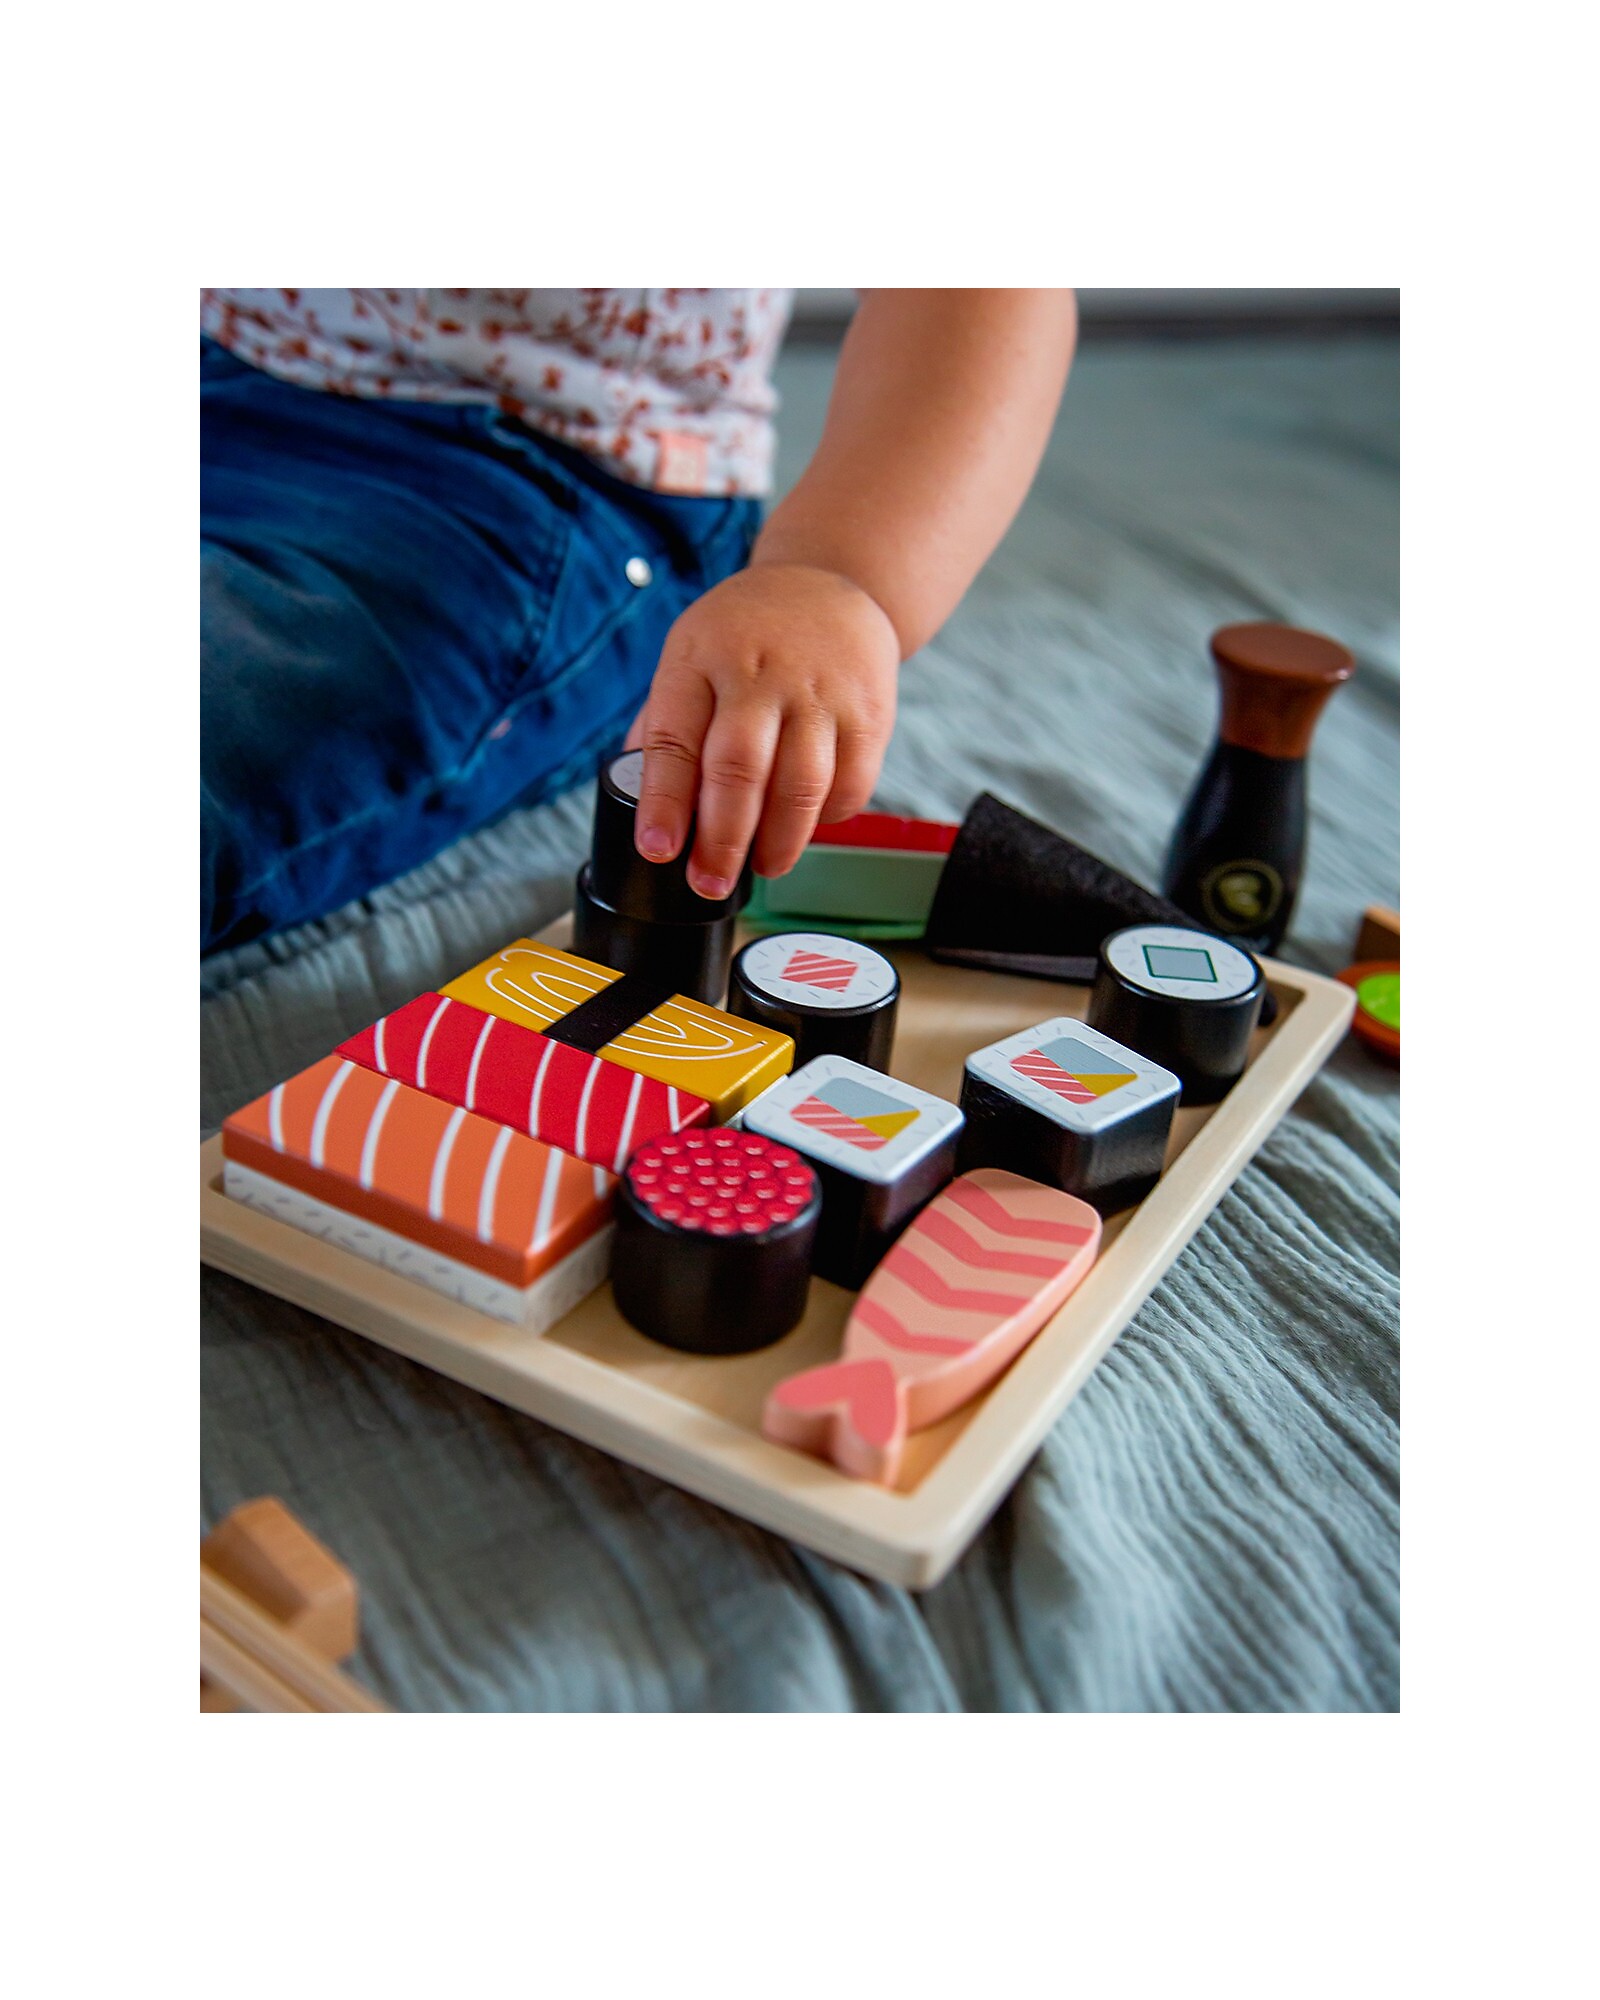 https://data.family-nation.it/imgprodotto/tryco-set-sushi-in-legno-23-pezzi-colori-ad-acqua-atossici-cibo-giocattolo_510263_zoom.jpg